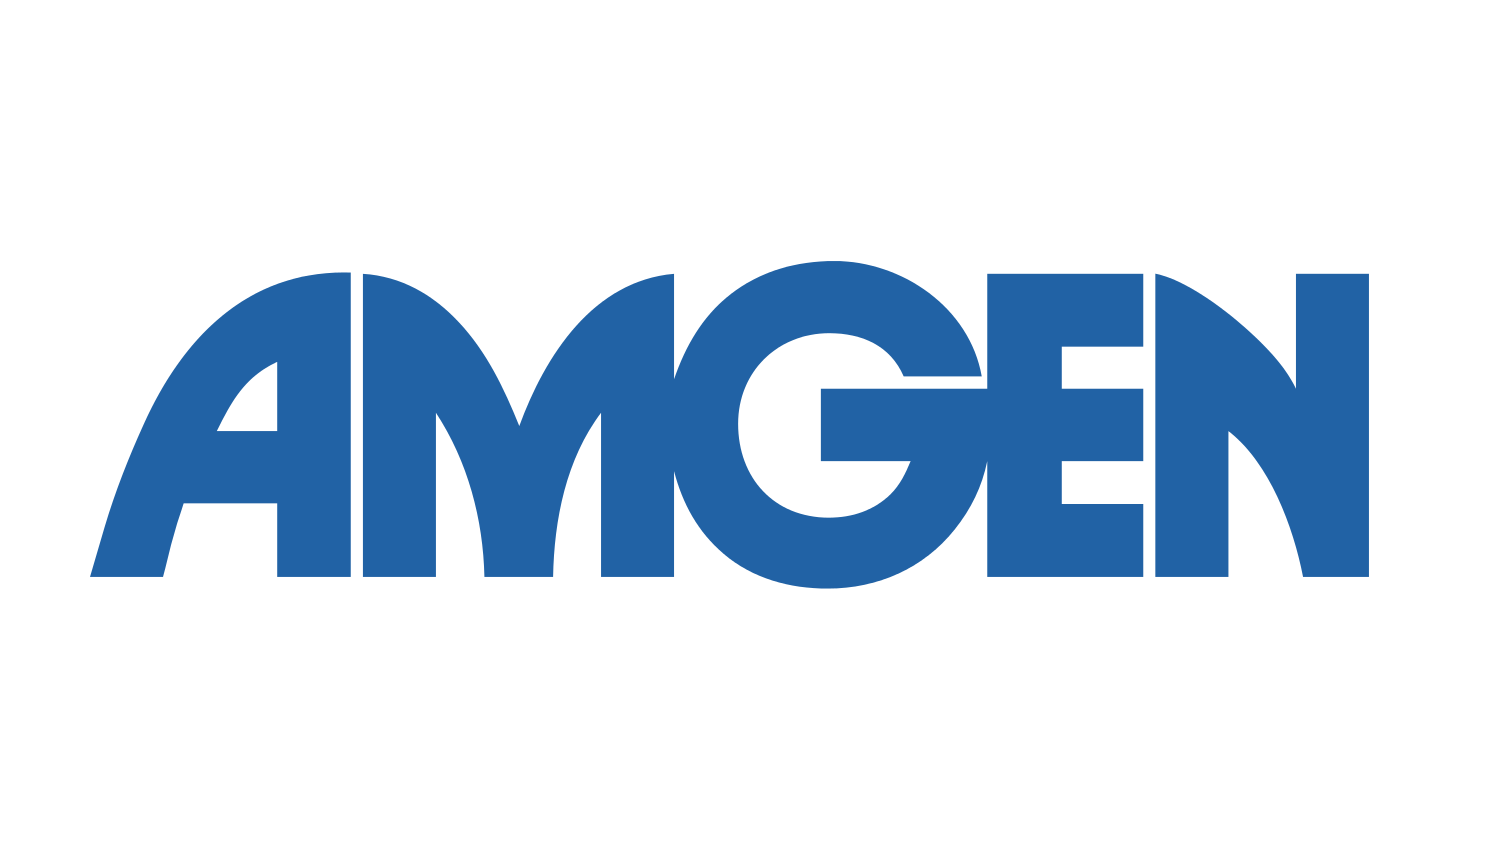 logo AMGEN